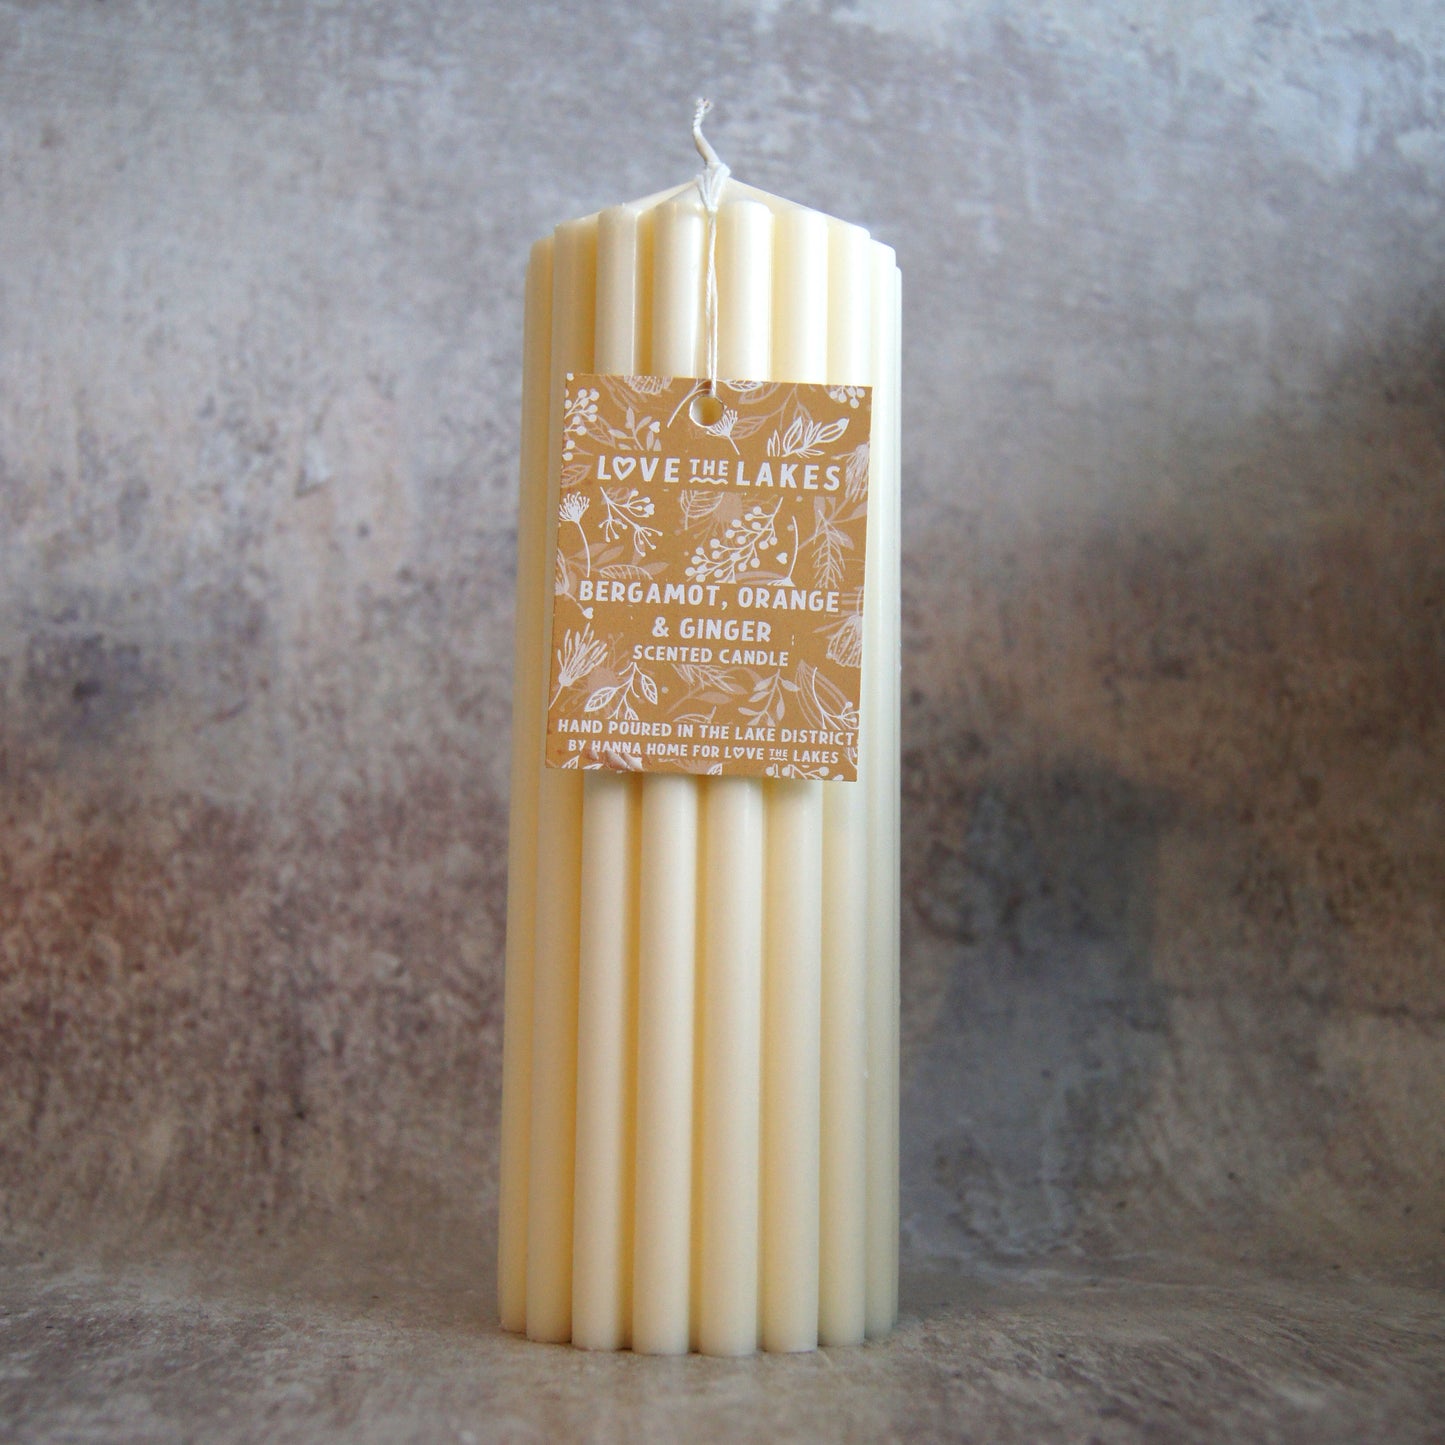 Bergamot, Orange & Ginger Scented Soy Wax Pillar Candle - 2 sizes